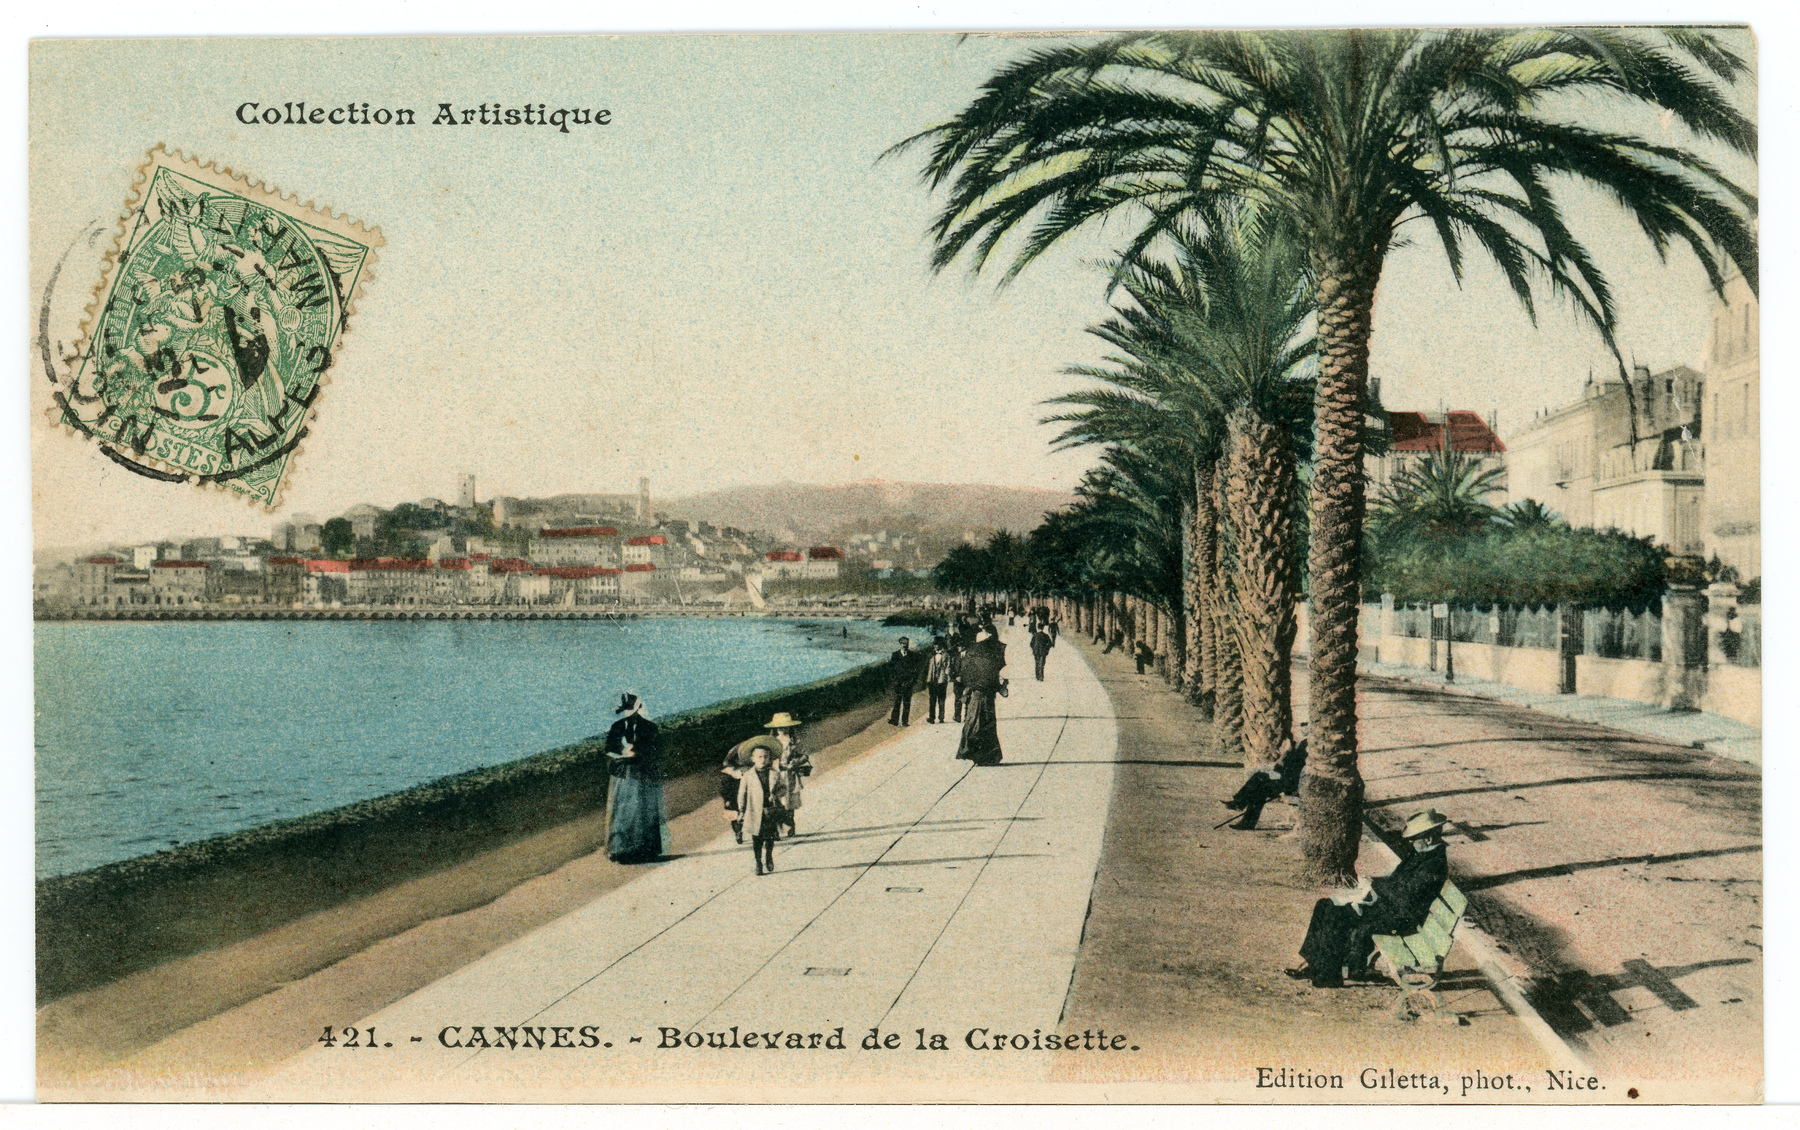 Contenu du Cannes. Boulevard de la Croisette.